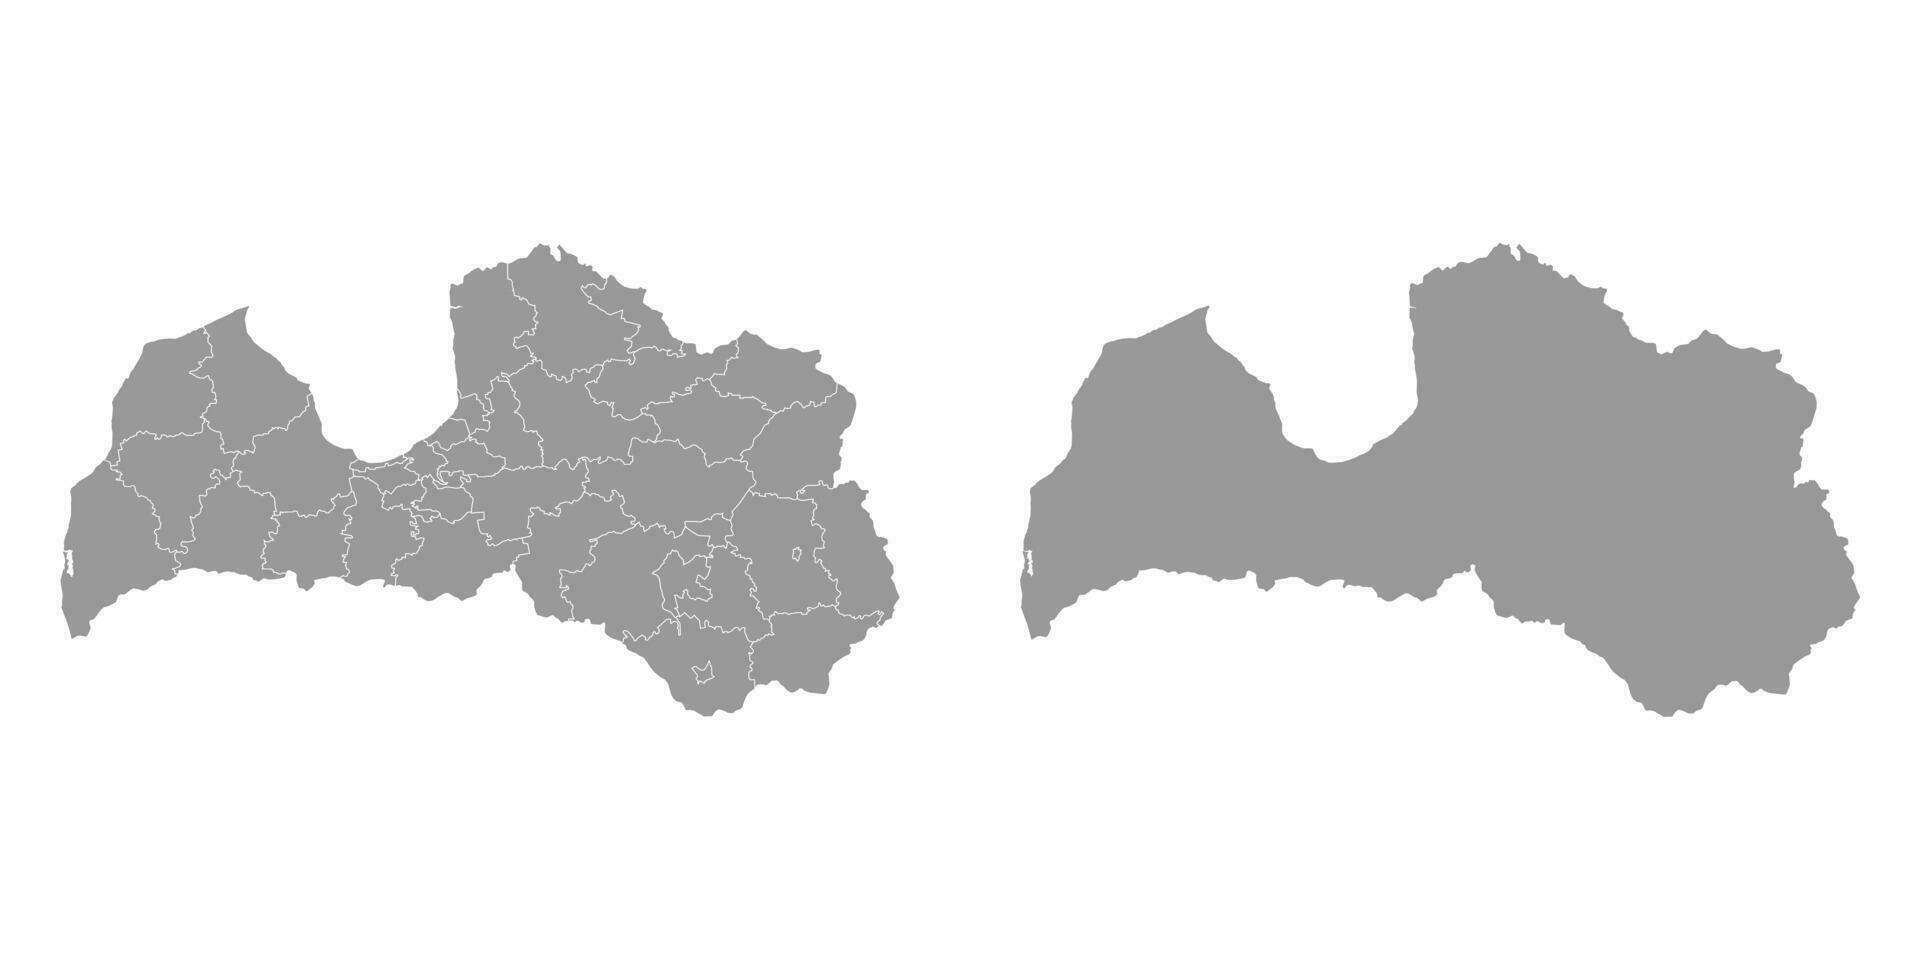 Letland grijs kaart met administratief divisie. vector illustratie.